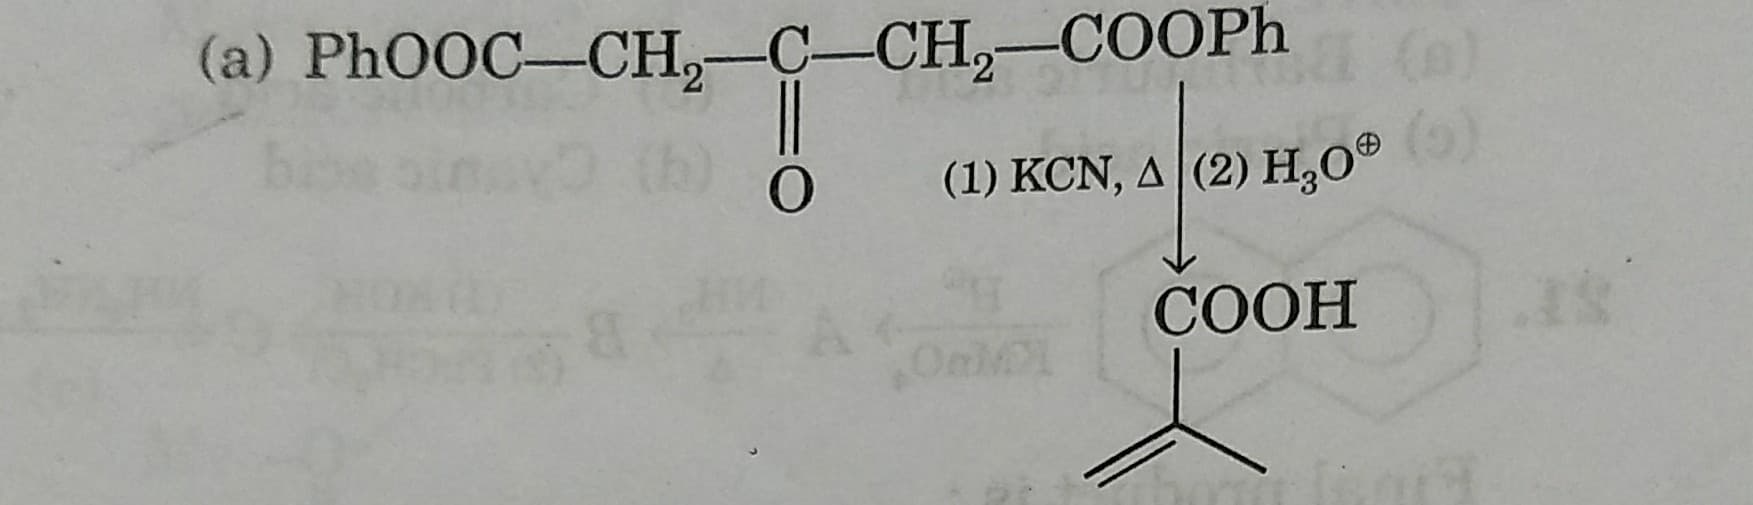 (a) PHOOC-CH,-C-CH,-COOP.
(1) KCN, A (2) H,0®
(o)
СООН
Onl
